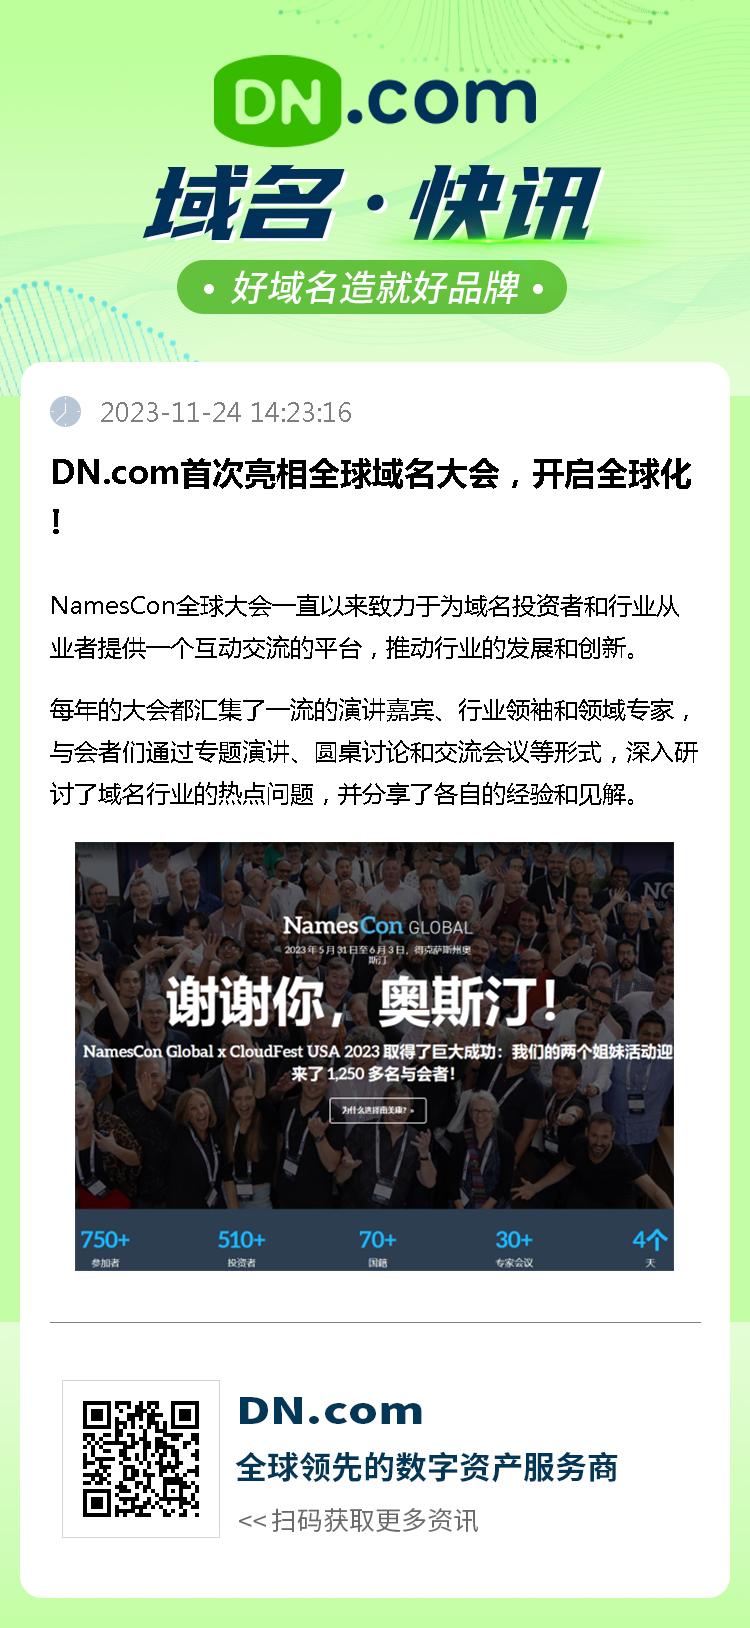 DN.com首次亮相全球域名大会，开启全球化!